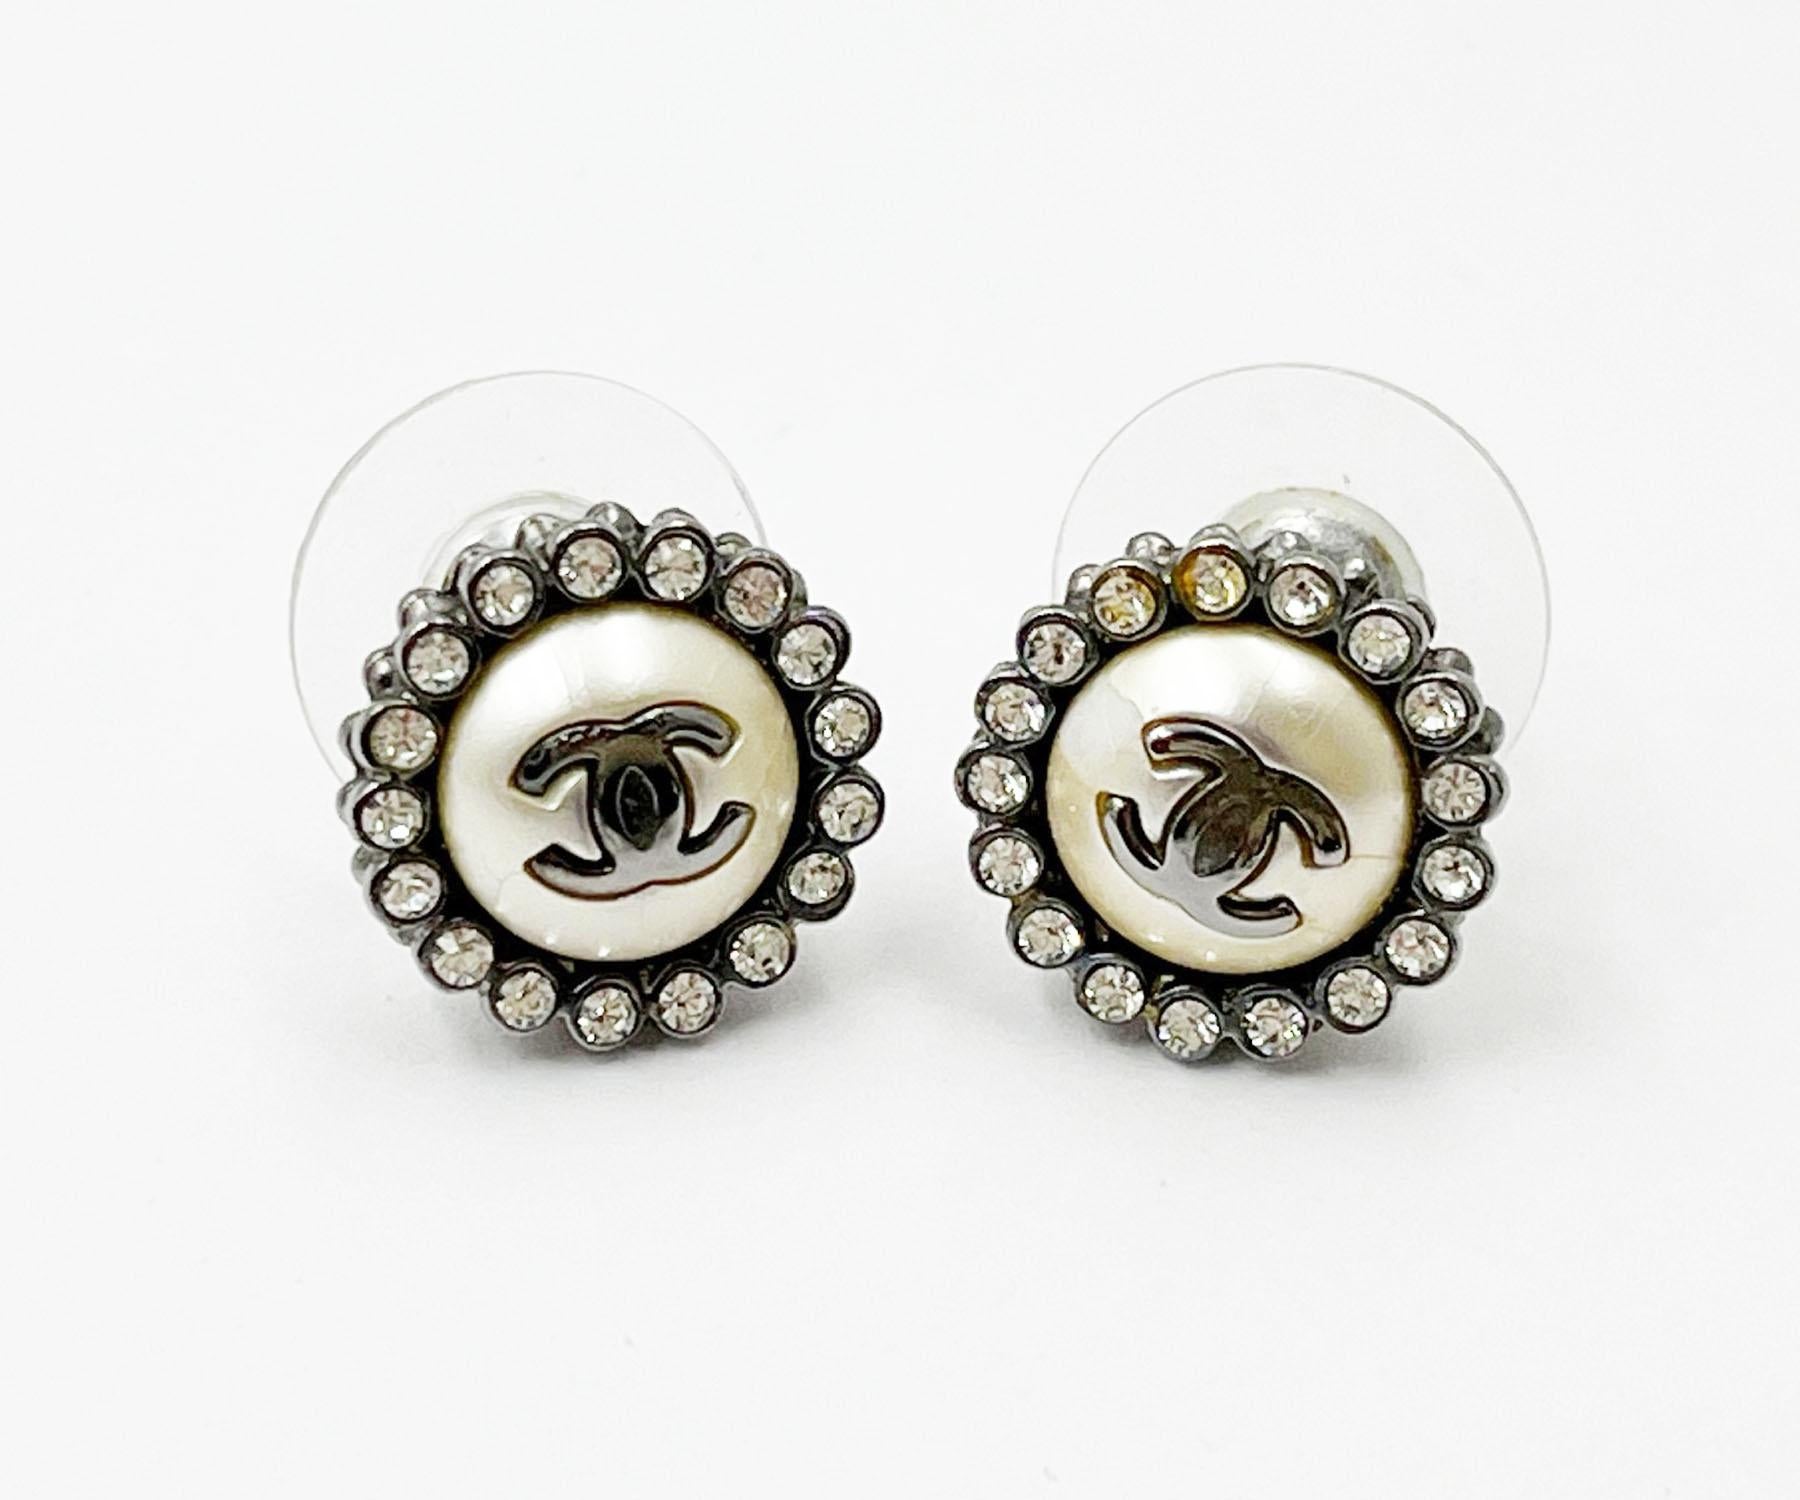 Chanel - Boucles d'oreilles en bronze avec cristaux ronds pour petits piercings

*Marked 16
*Fabriqué en France

-Il mesure environ 0,5